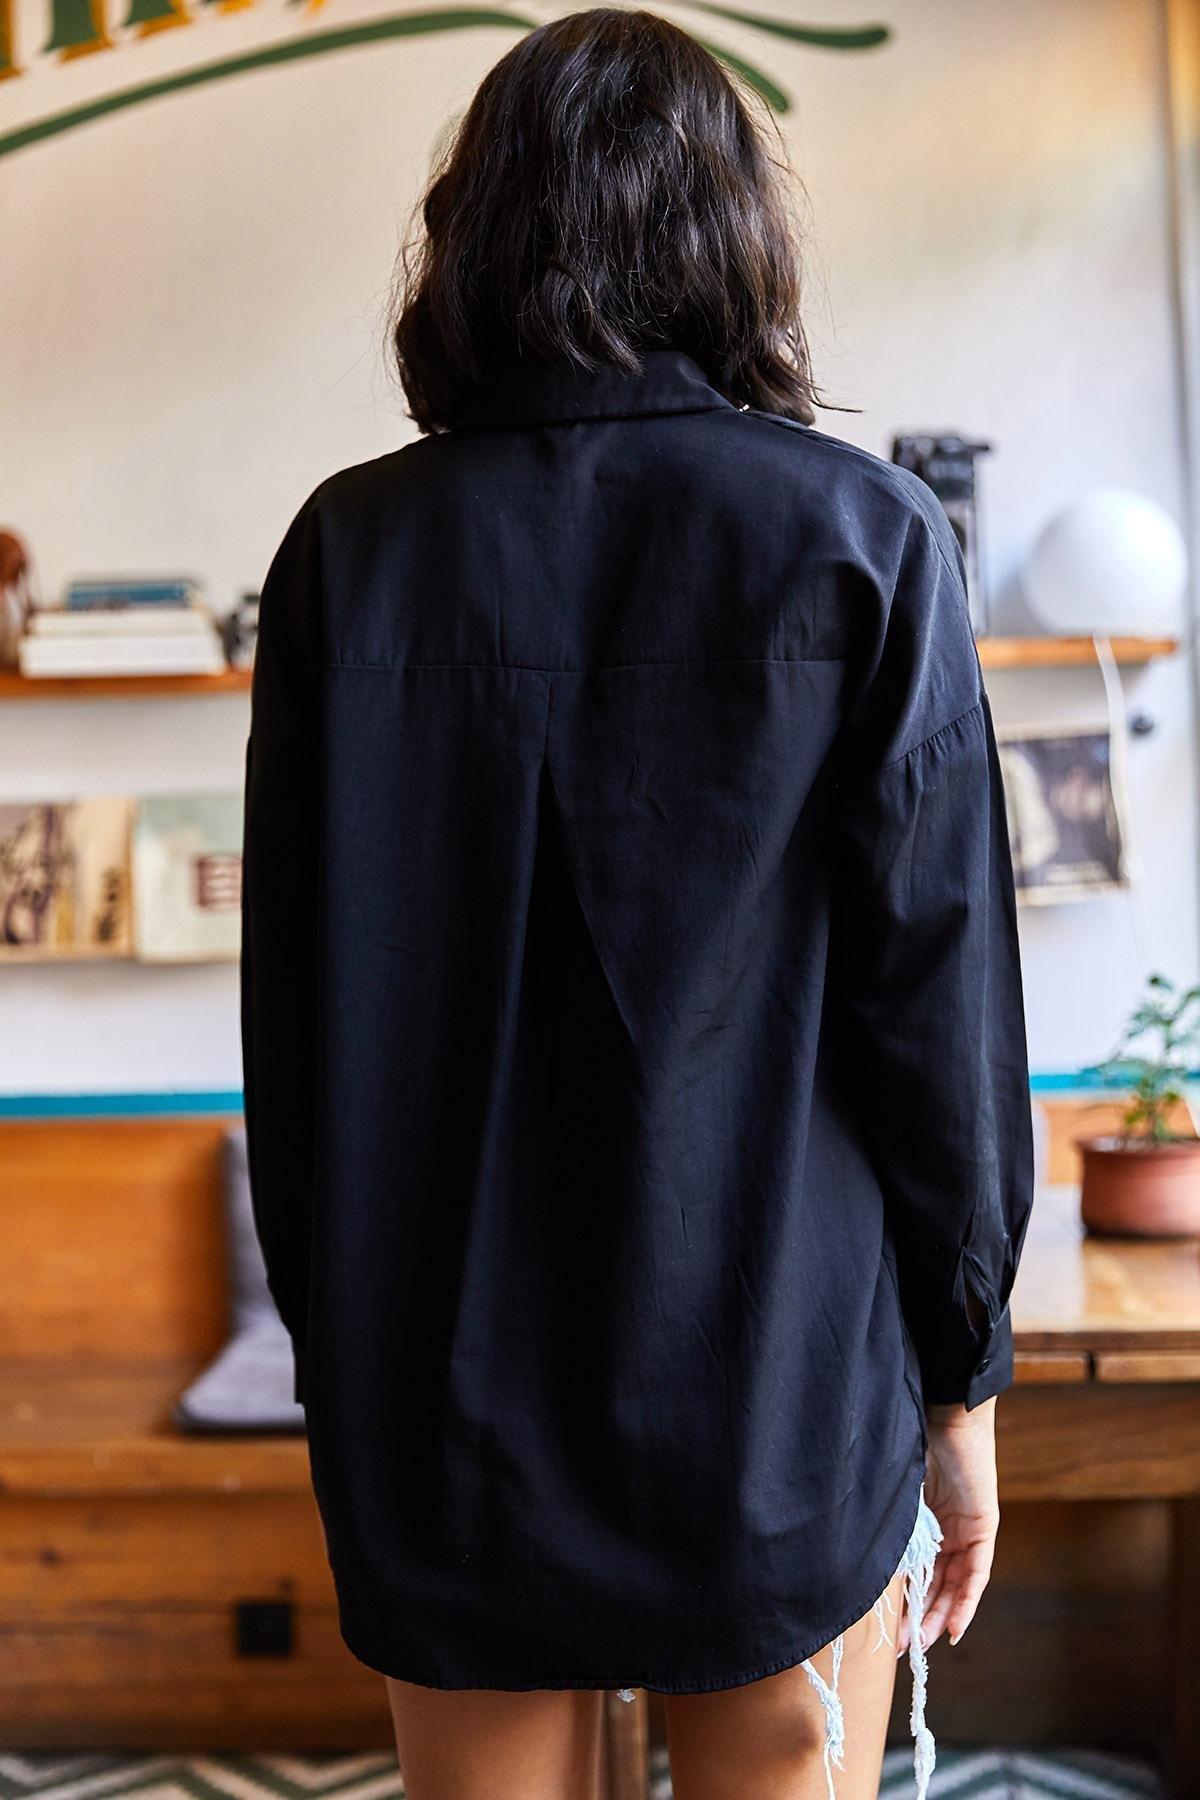 Olalook - Black Sequined Oversized Woven Poplin Shirt